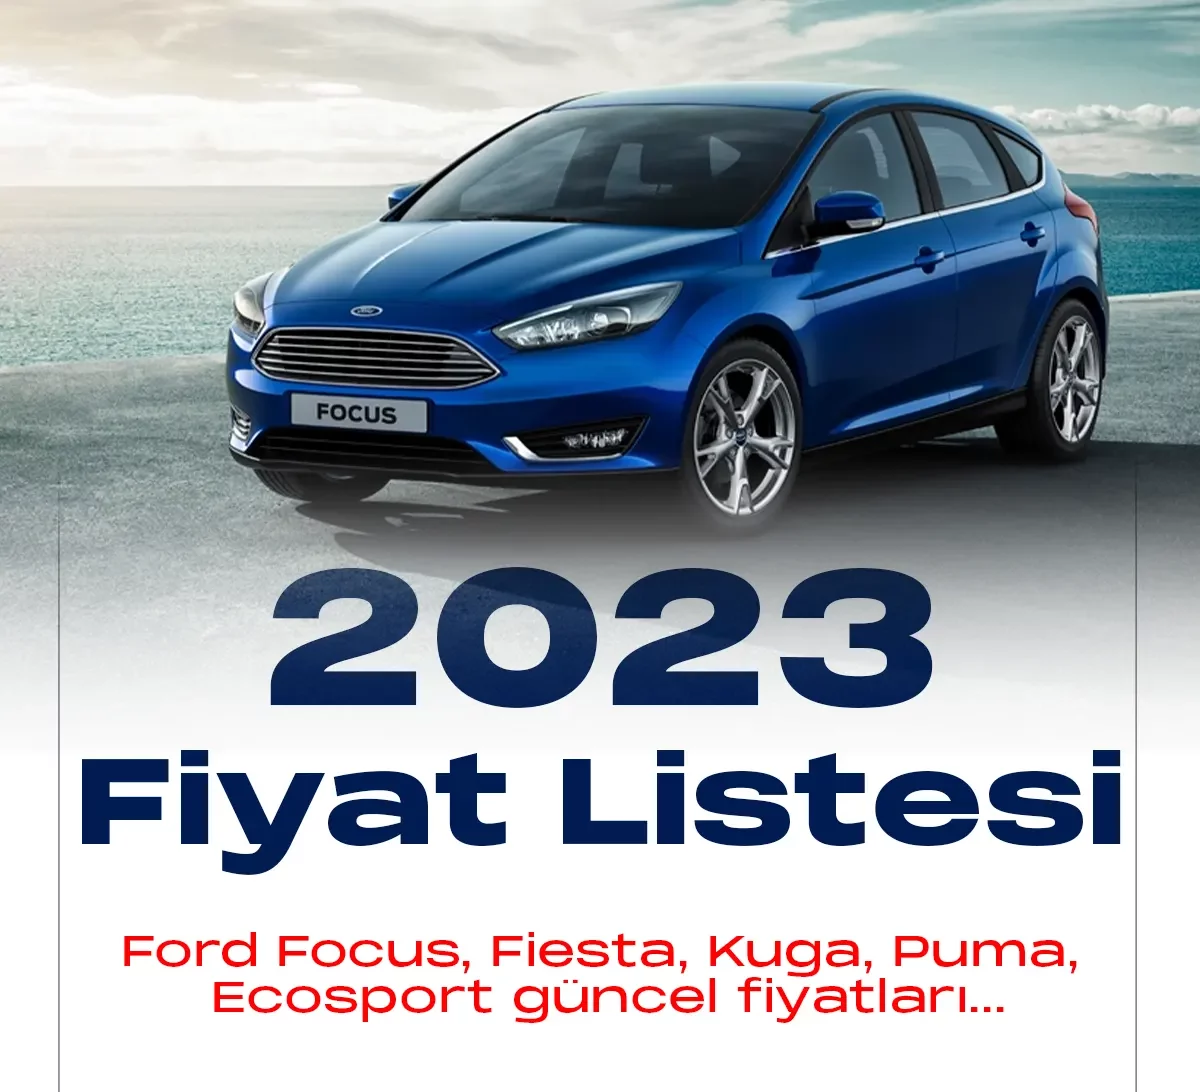 Ford Ocak 2023 fiyat listesi yayımlandı.